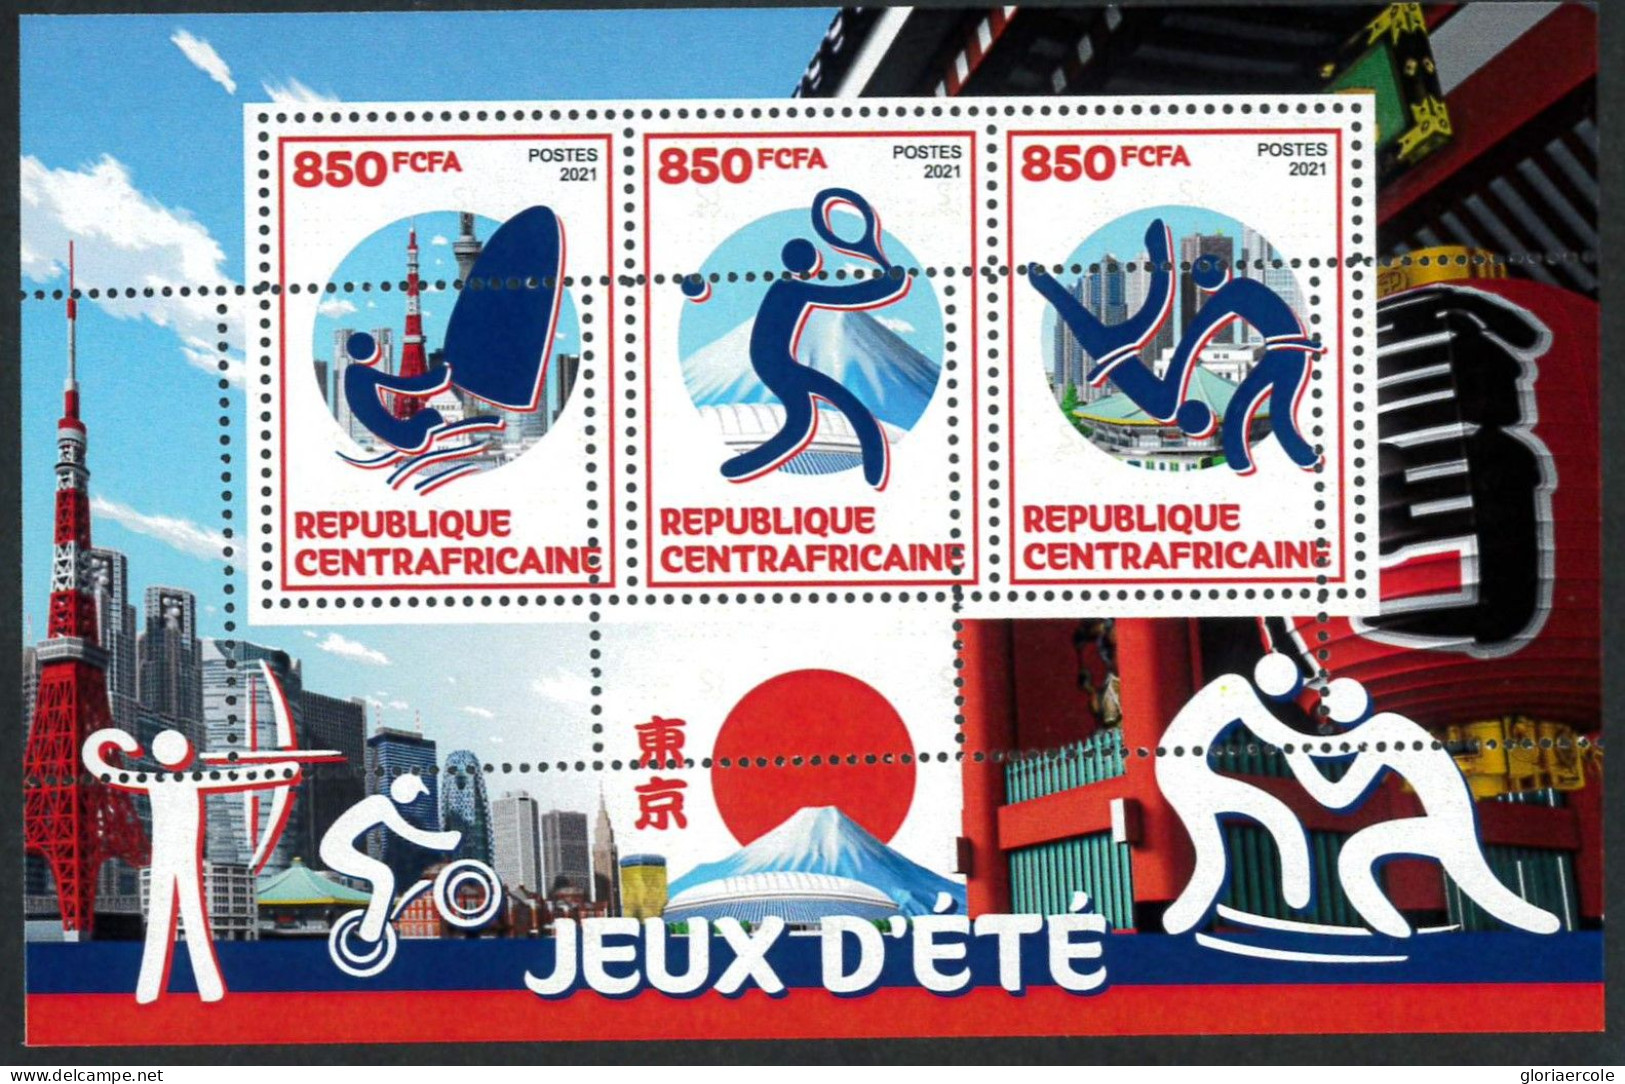 A7402 - CENTRAFRICAINE - ERROR MISPERF Stamp Sheet - 2021 - Sport TENNIS JUDO - Verano 2020 : Tokio